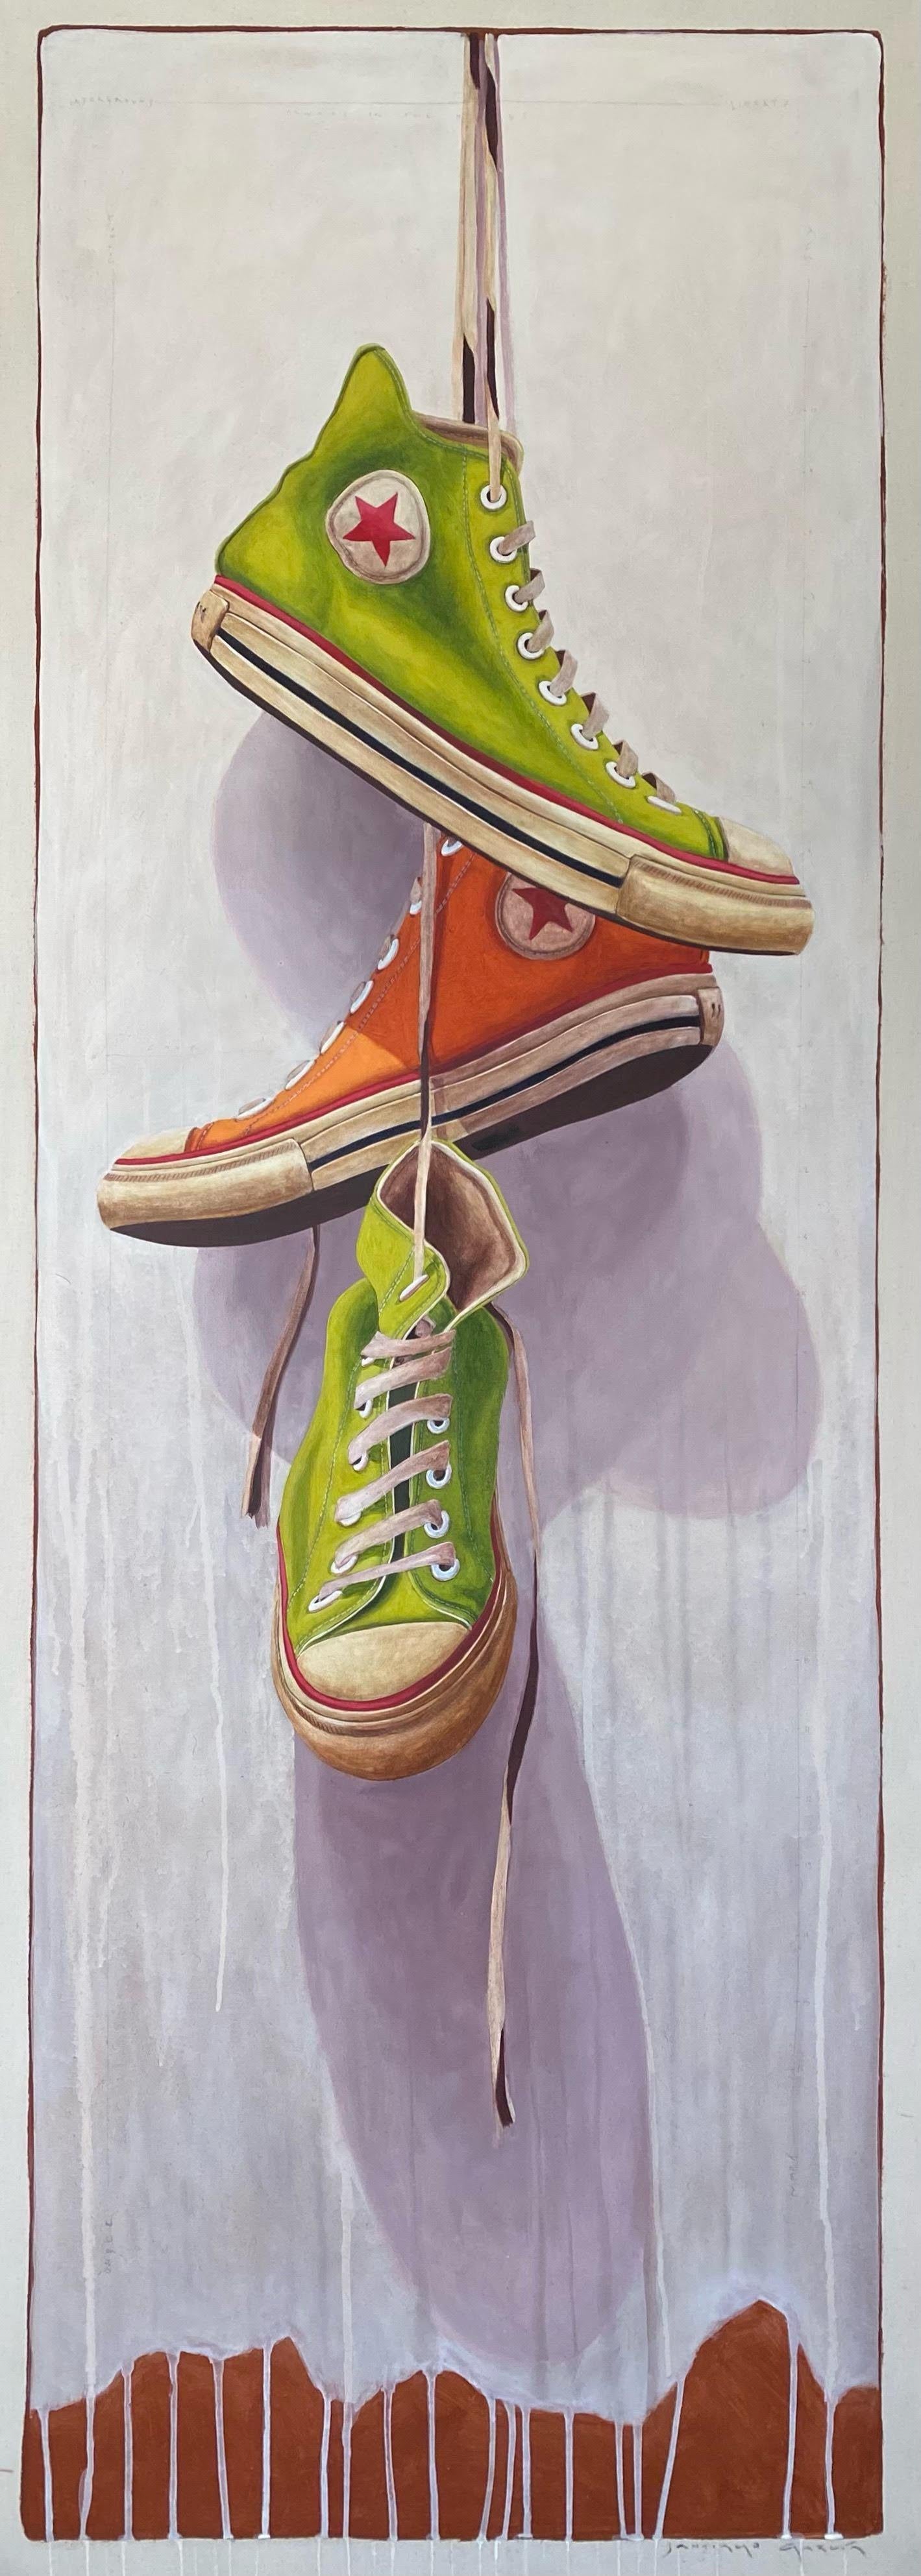 Figurative Painting Santiago Garcia - Peinture à l'huile « n°1411 » représentant des baskets converses vertes et oranges accrochées à leur dentelle